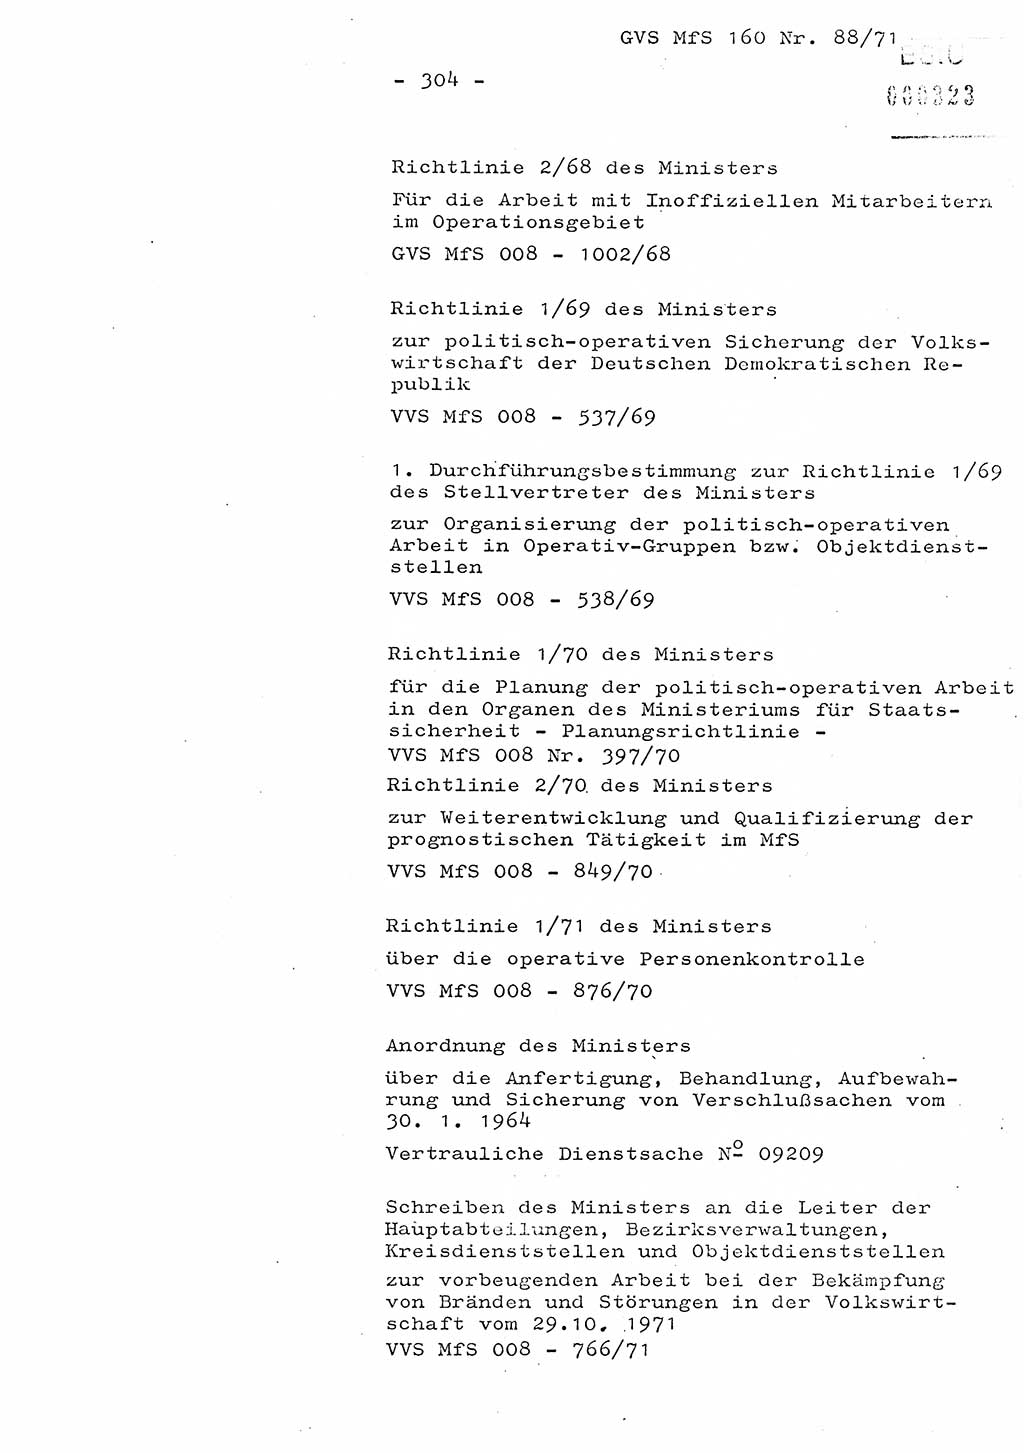 Dissertation Oberstleutnant Josef Schwarz (BV Schwerin), Major Fritz Amm (JHS), Hauptmann Peter Gräßler (JHS), Ministerium für Staatssicherheit (MfS) [Deutsche Demokratische Republik (DDR)], Juristische Hochschule (JHS), Geheime Verschlußsache (GVS) 160-88/71, Potsdam 1972, Seite 304 (Diss. MfS DDR JHS GVS 160-88/71 1972, S. 304)